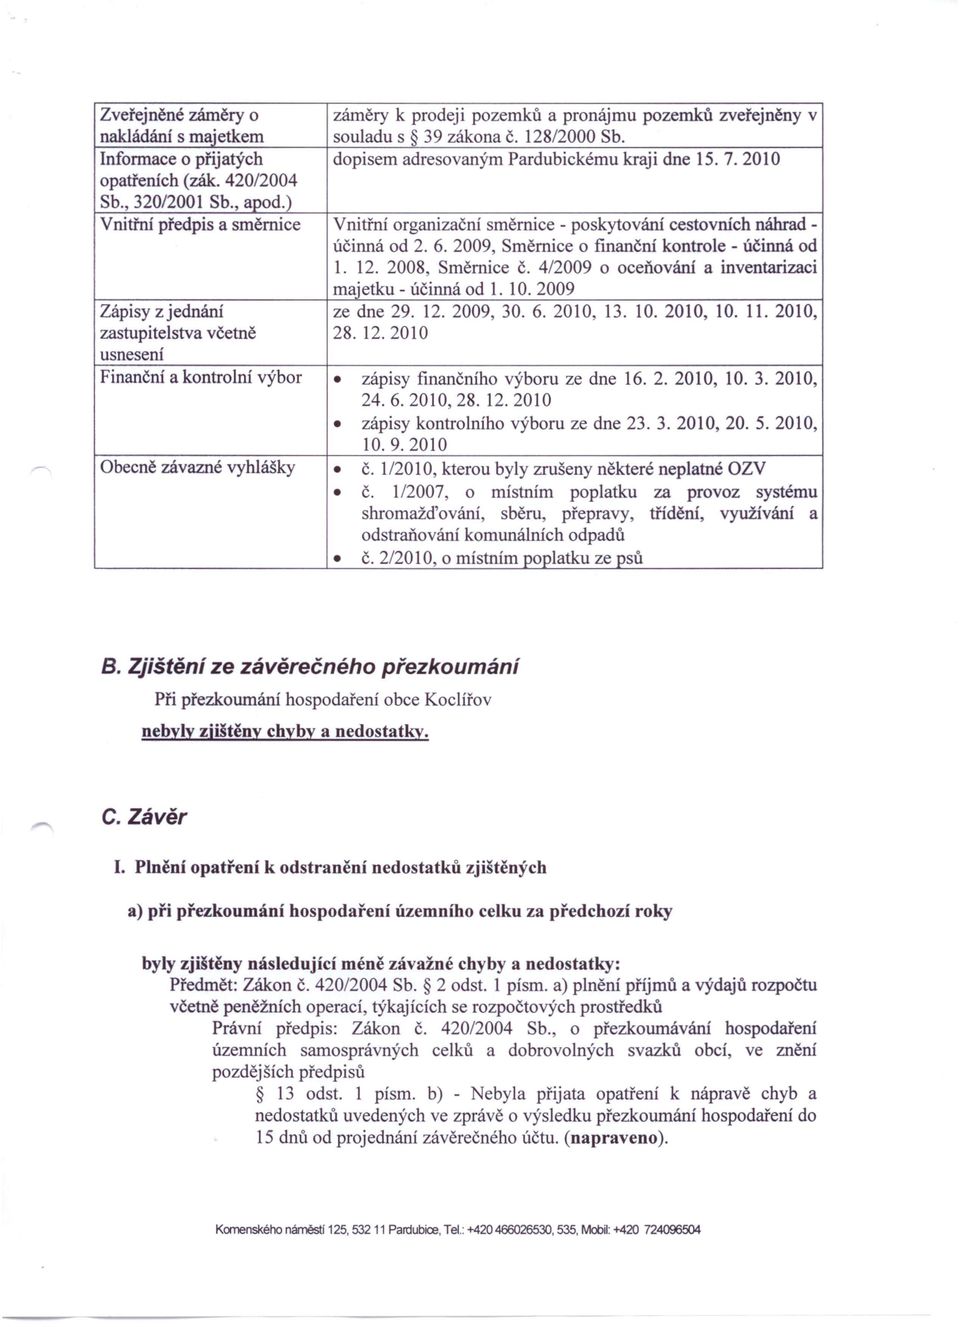 ) Vnitřní předpis a směrnice Vnitřní organizační směrnice - poskytování cestovních náhradúčinná od 2. 6.2009, Směrnice o fmanční kontrole - účinná od 1. 12. 2008, Směrnice Č.